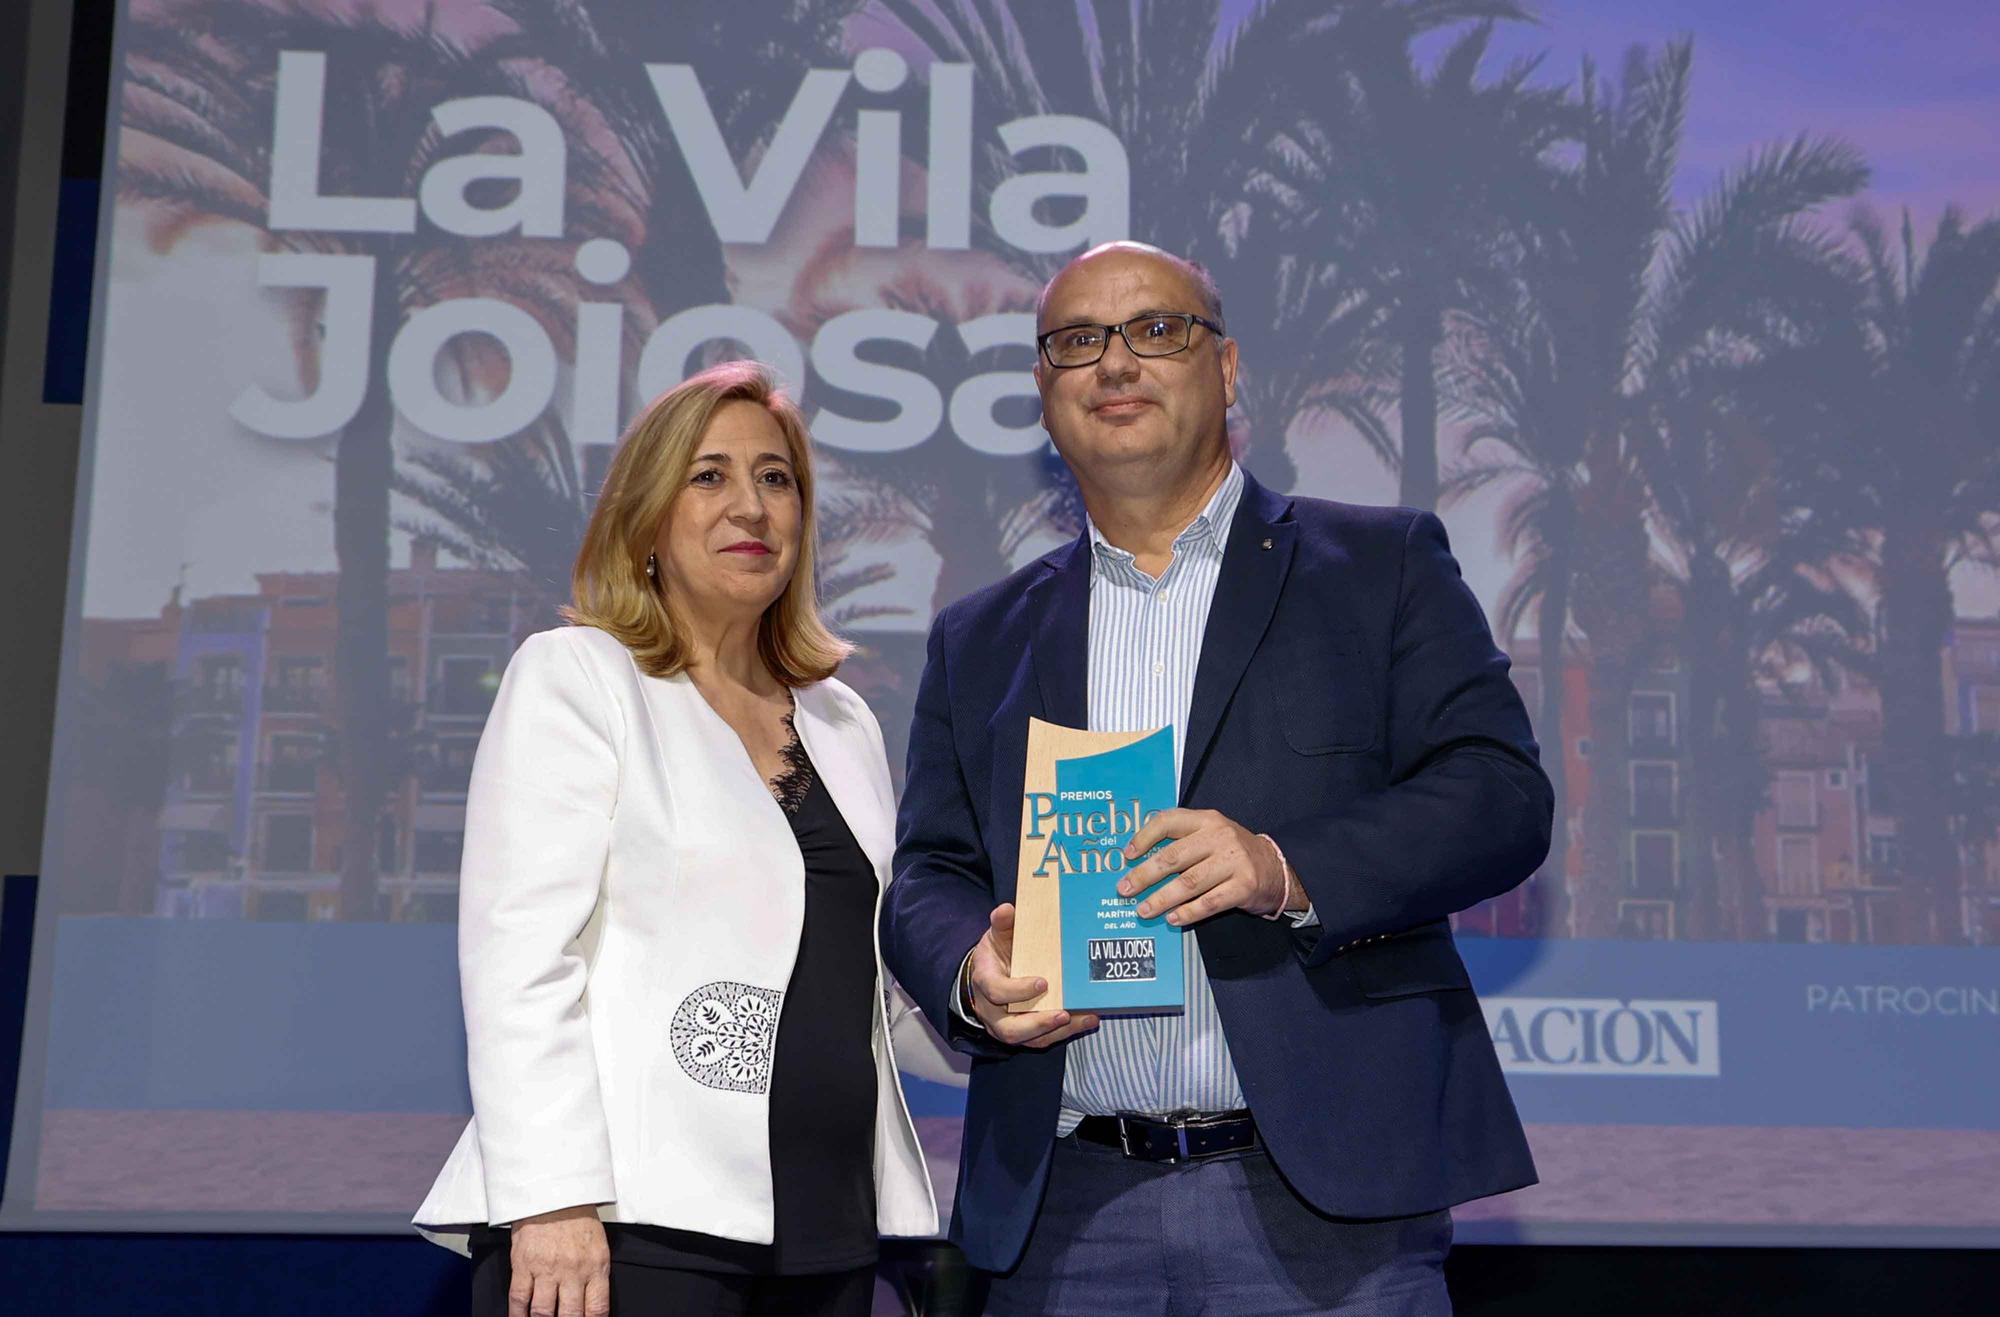 La Vila Joiosa, Cox, Villena y Relleu se han convertido en los pueblos del año de la provincia de Alicante